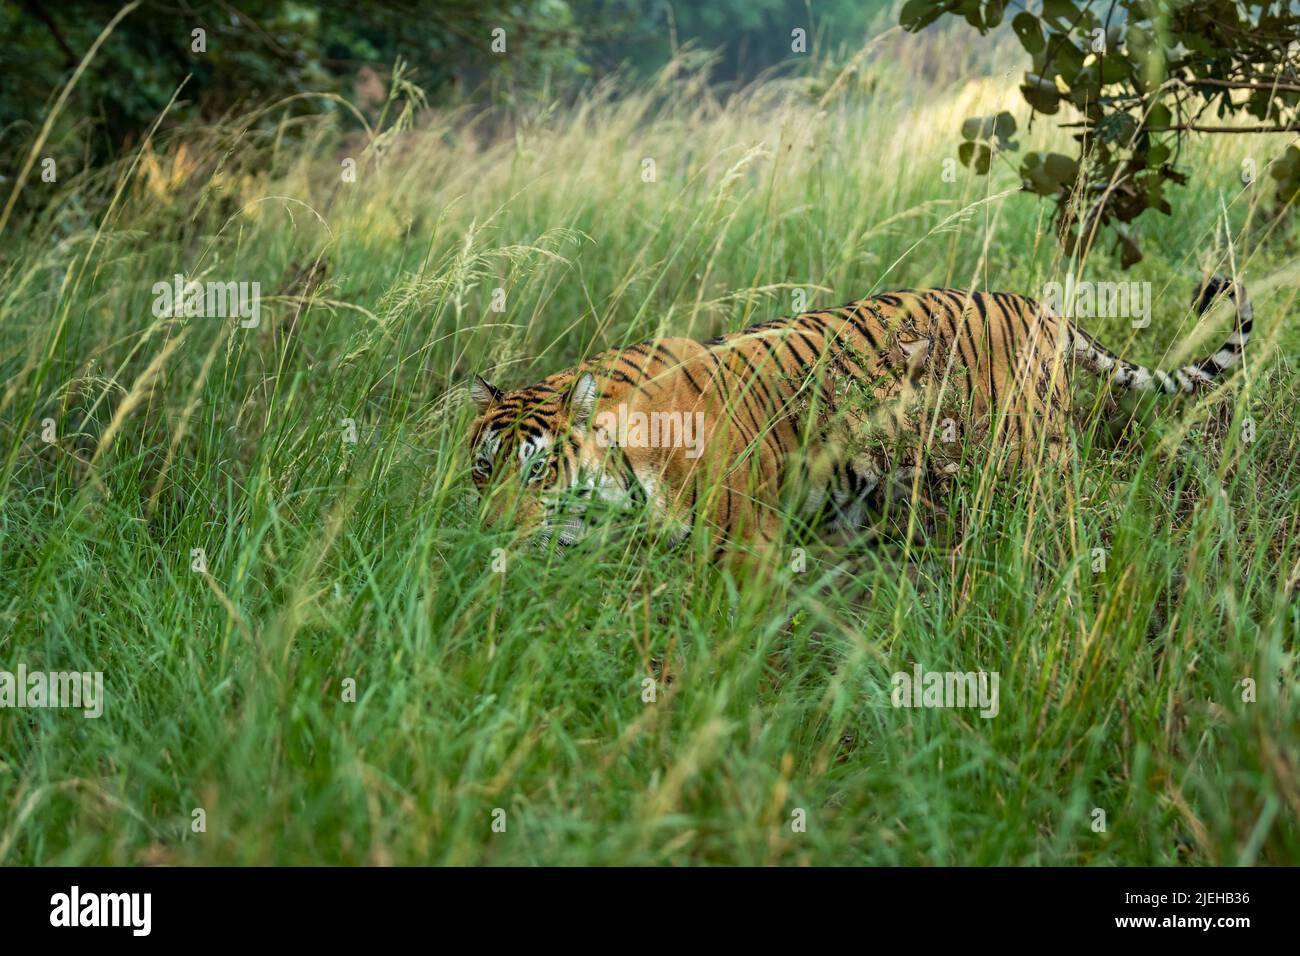 Femelle sauvage indienne tigre du bengale ou panthera tigris tigris camouflage en herbe verte dans la forêt du parc national de ranthambore sawai madhopur rajasthan inde Banque D'Images